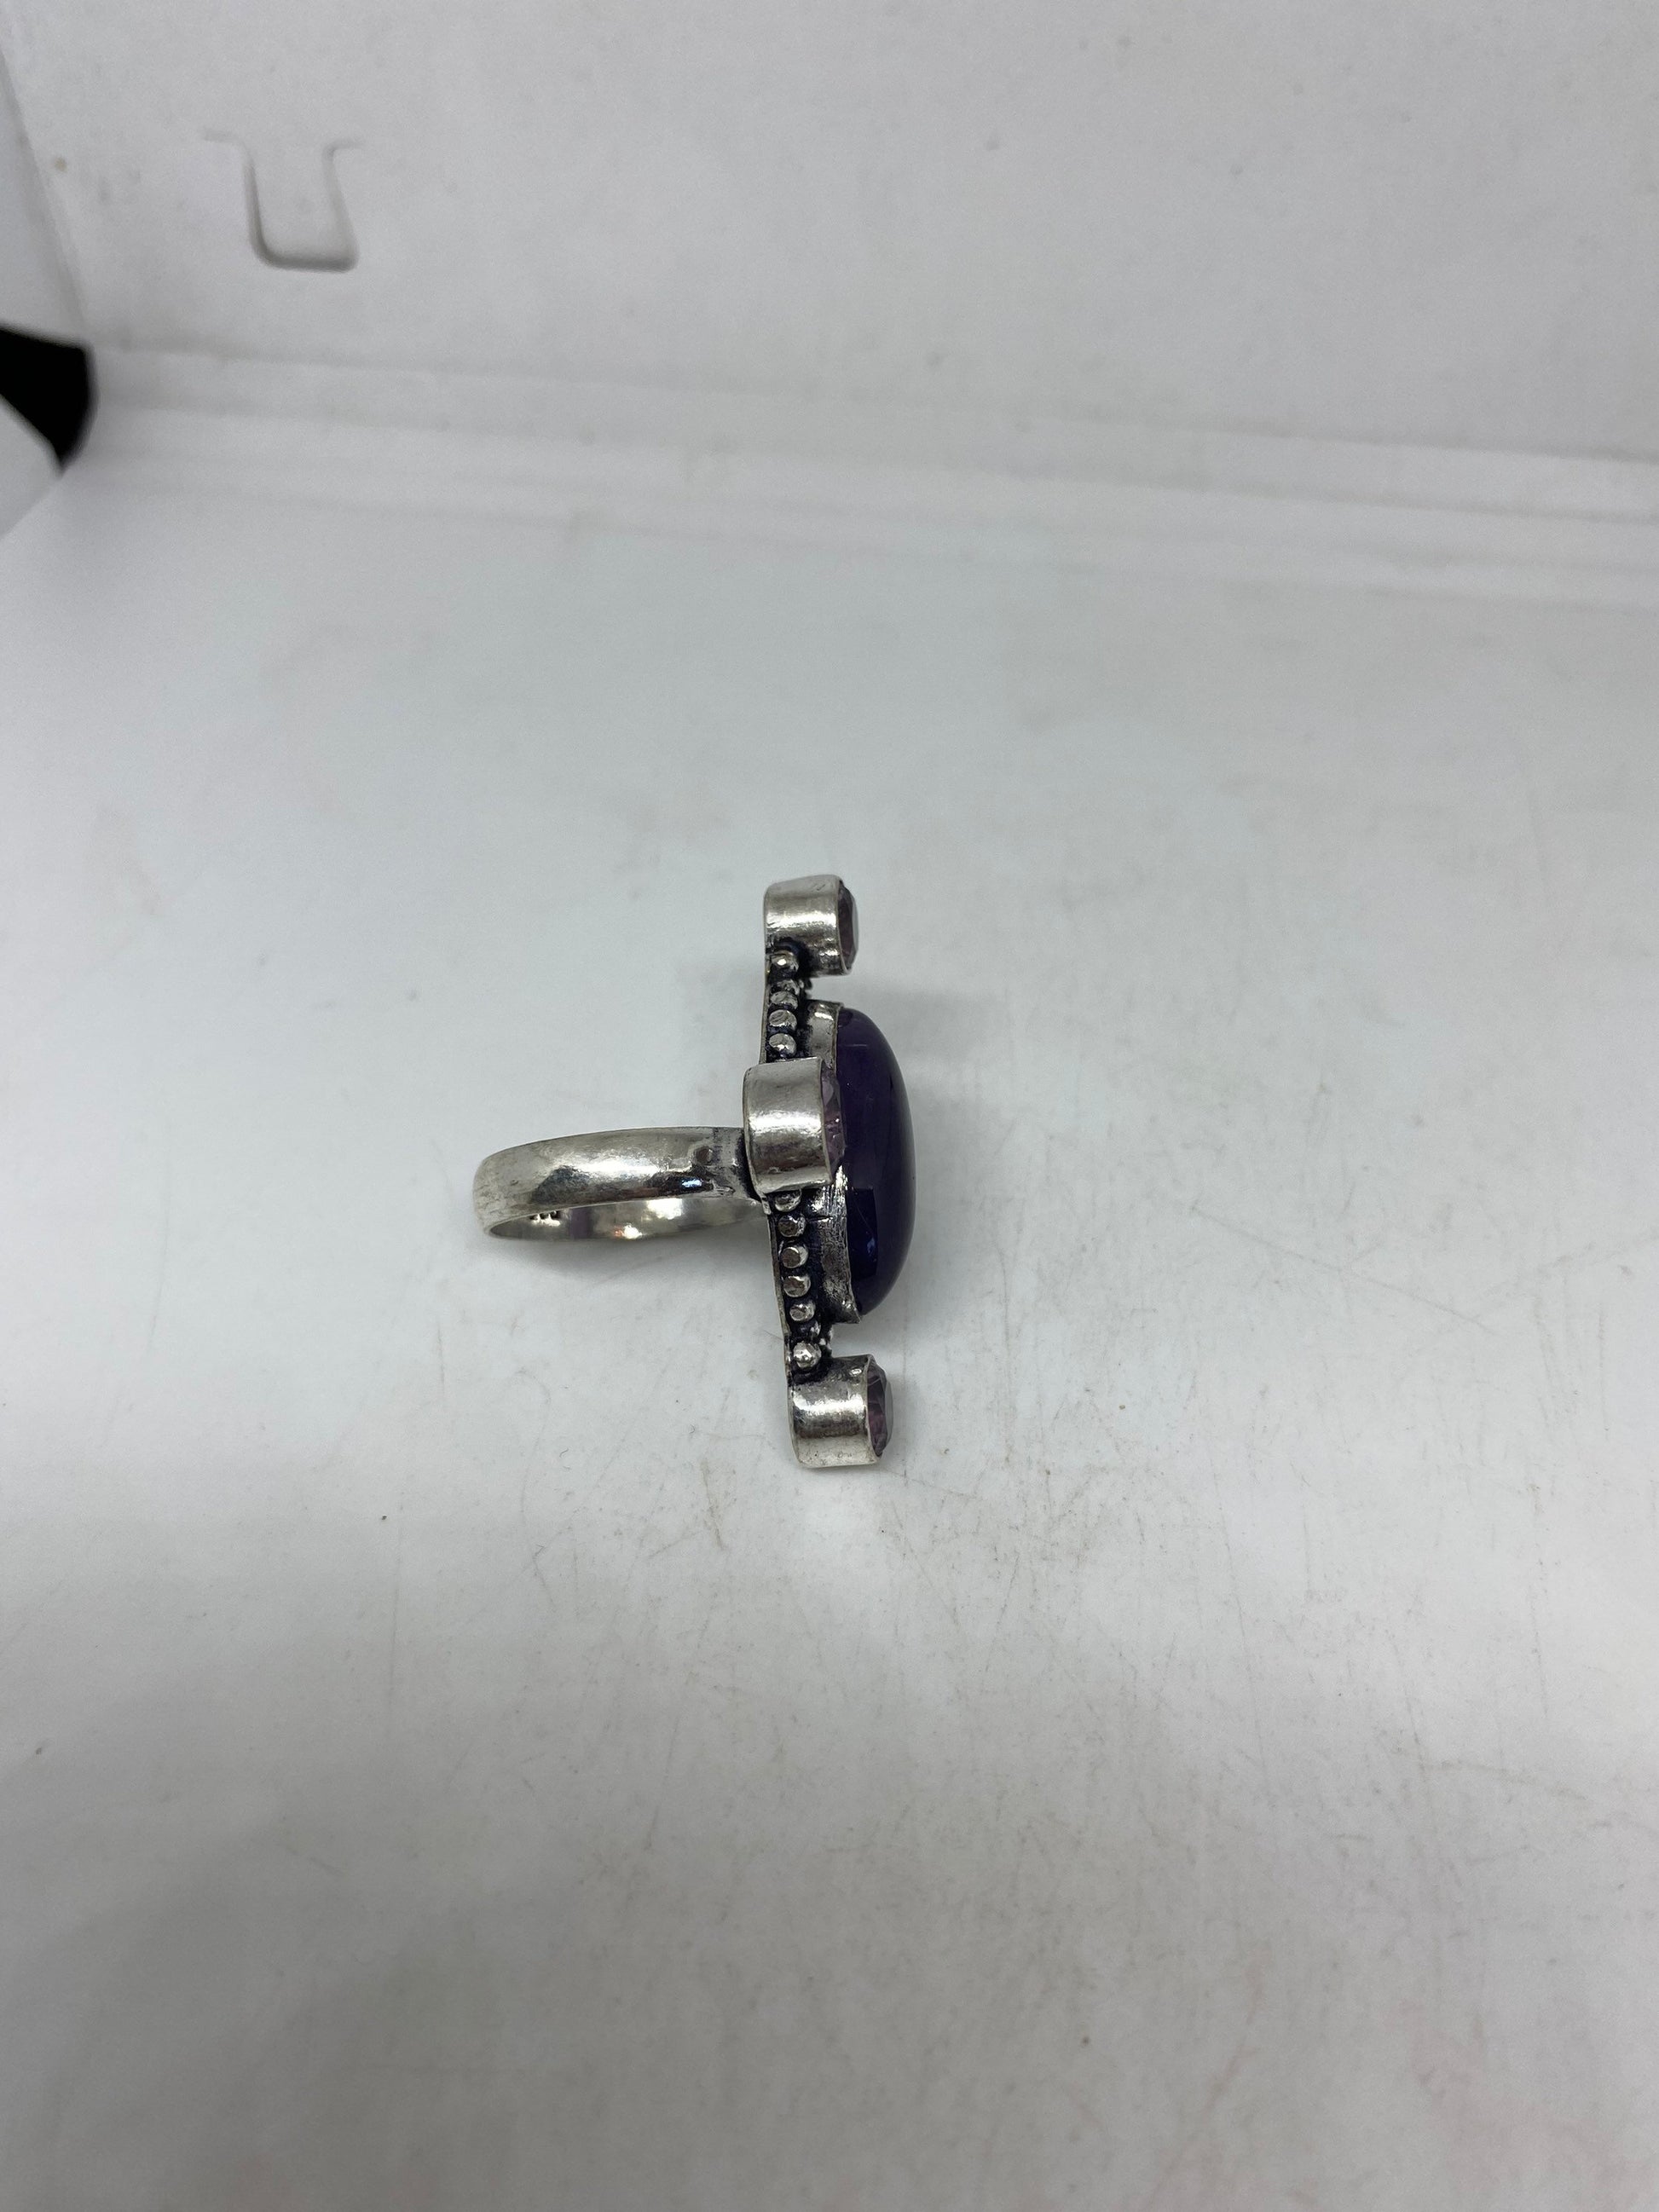 Vintage Genuine Purple Amethyst Ring